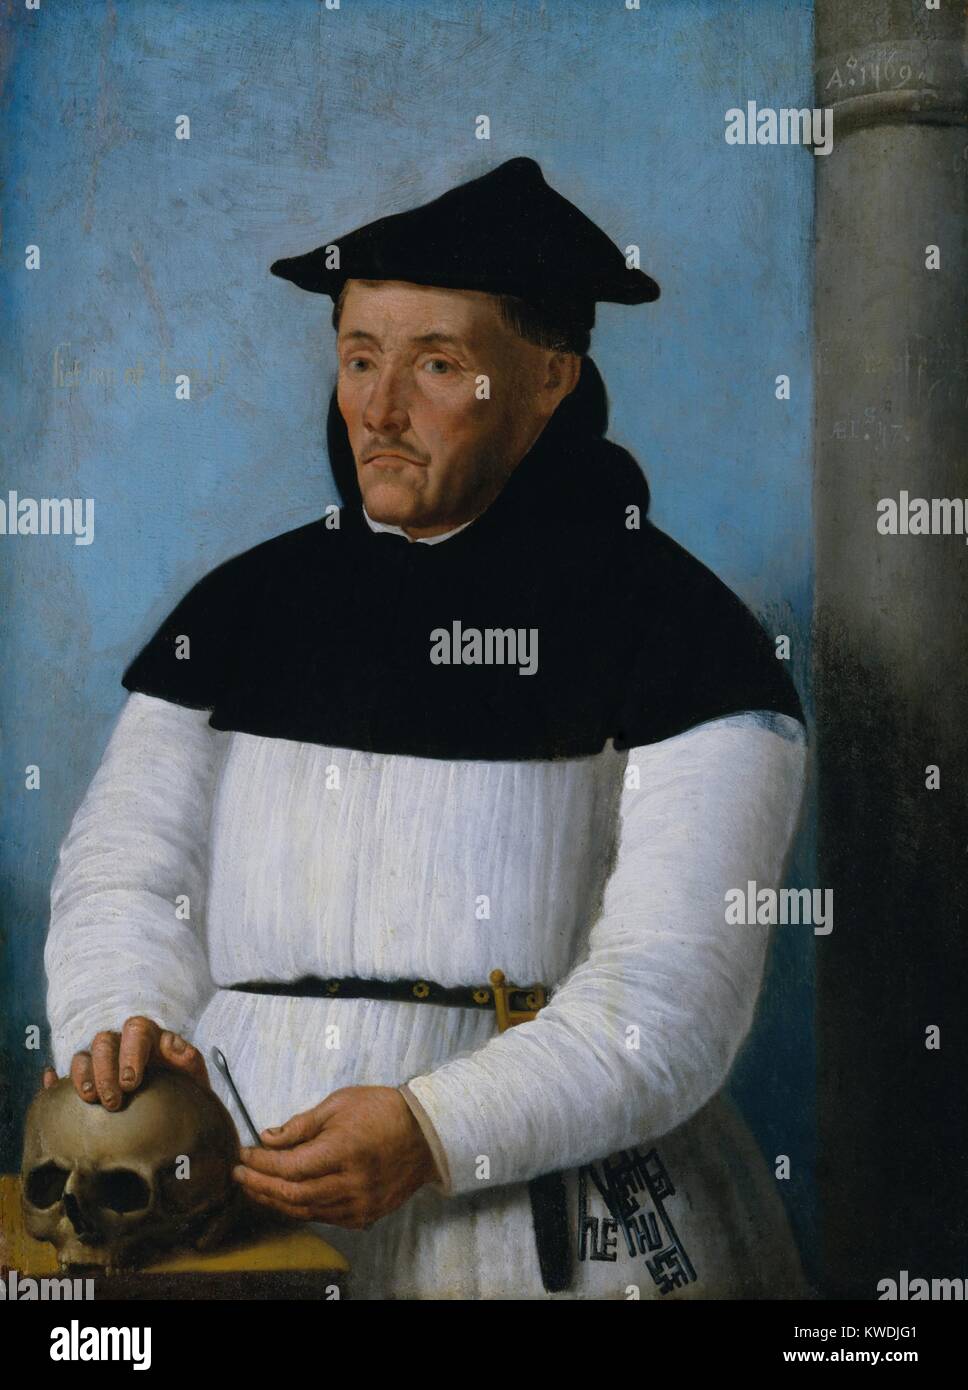 Porträt eines Chirurgen, 1569, Niederländischen, Northern Renaissance Malerei, Öl auf Holz. Ein Chirurg mit den Attributen seines Handels: ein Schädel; ein Metall instrument Schädel zu ausbrennen; und eine Säge (BSLOC 2017 16 116) Stockfoto